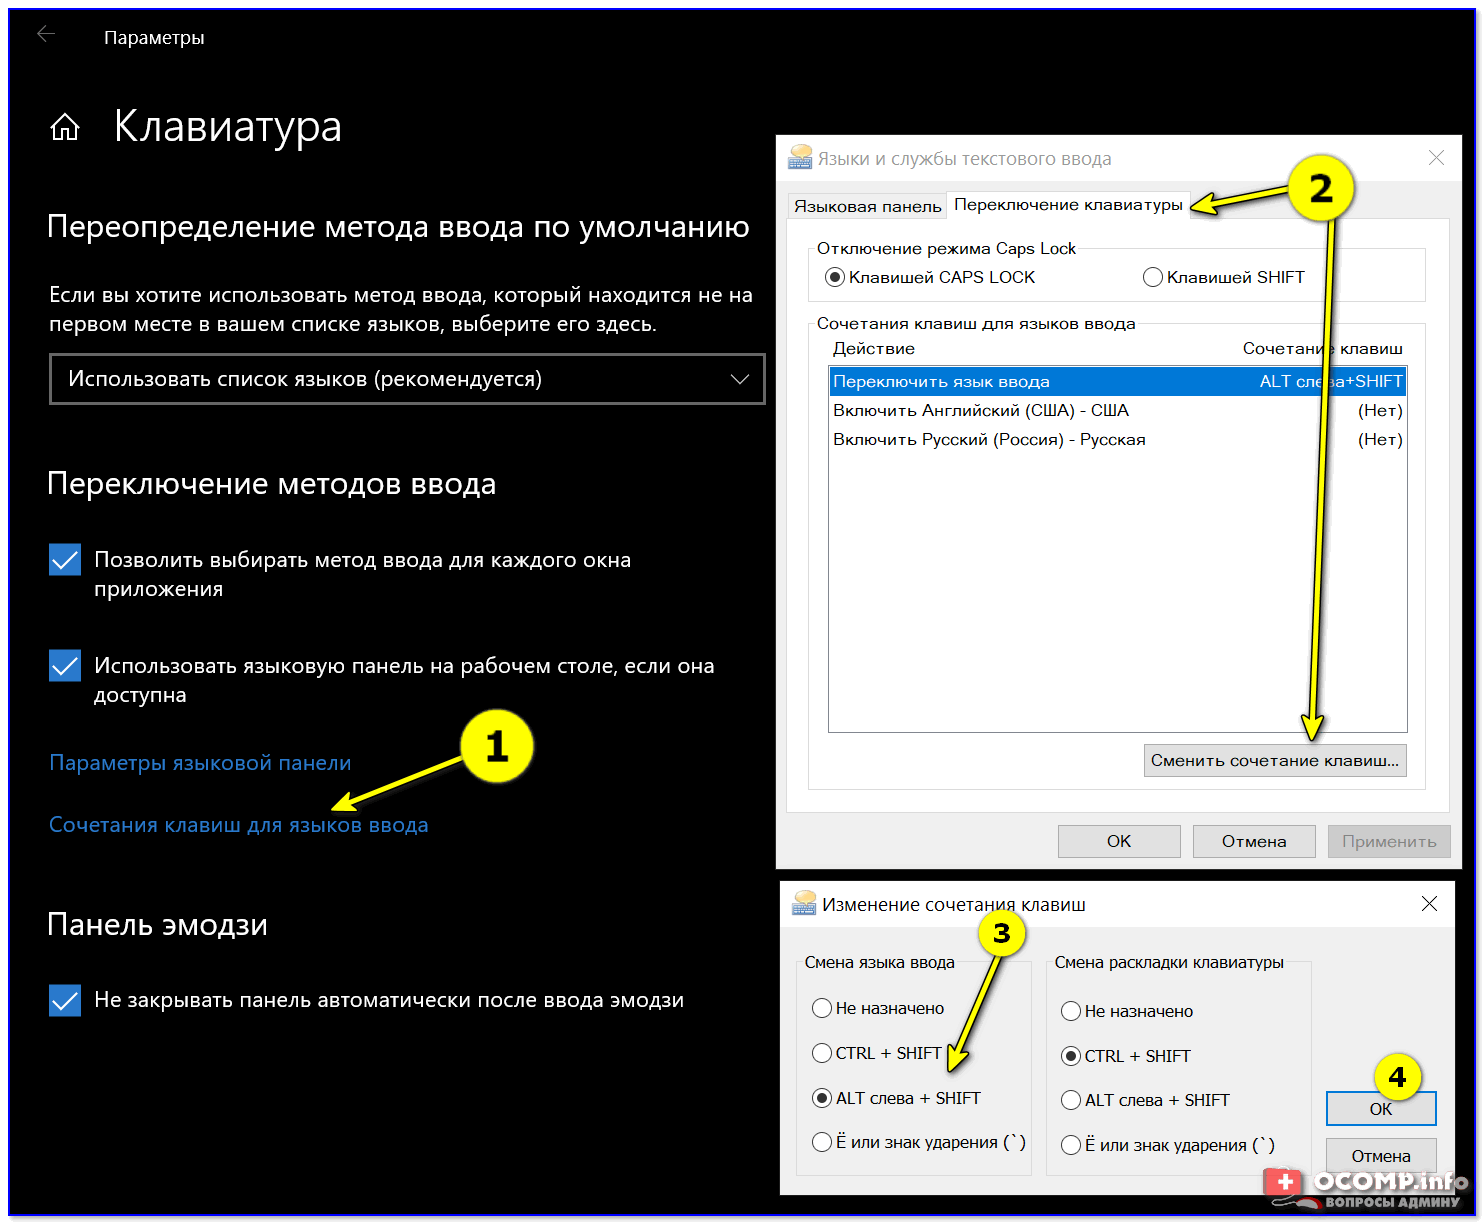 Инструкция: что делать, если не переключается язык на клавиатуре в Windows 10